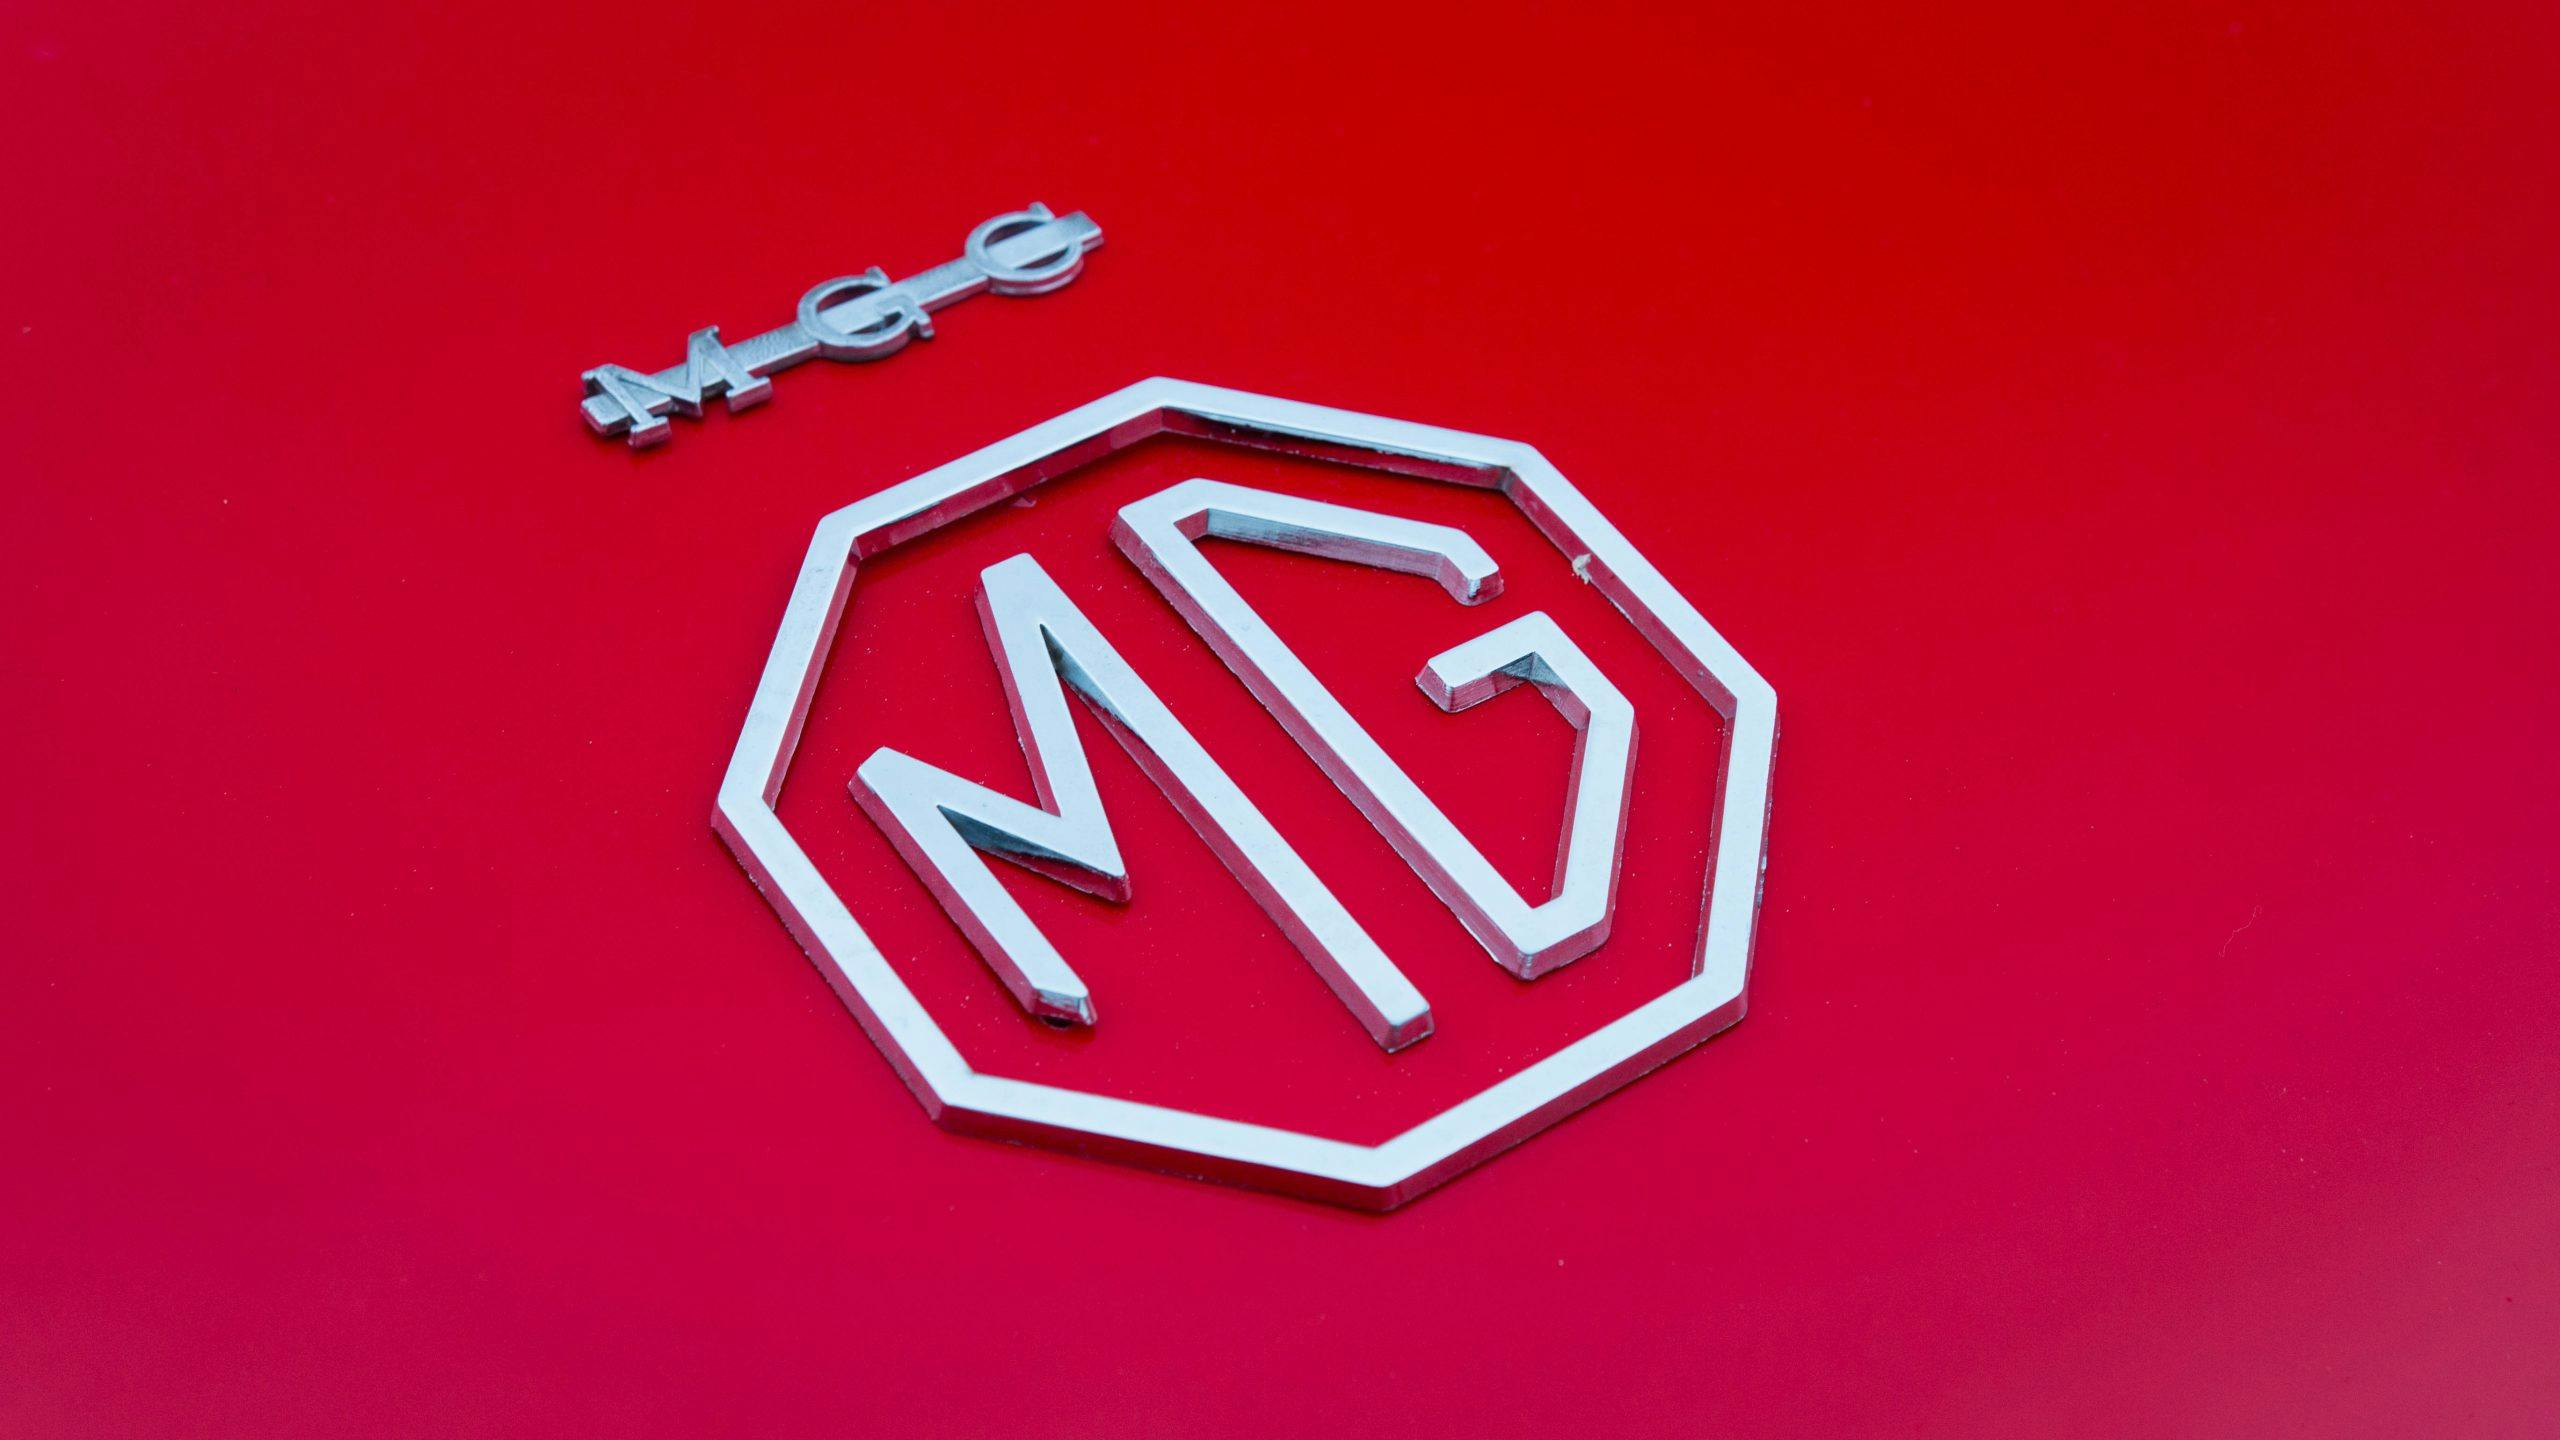 1969 MG MGC badge detail